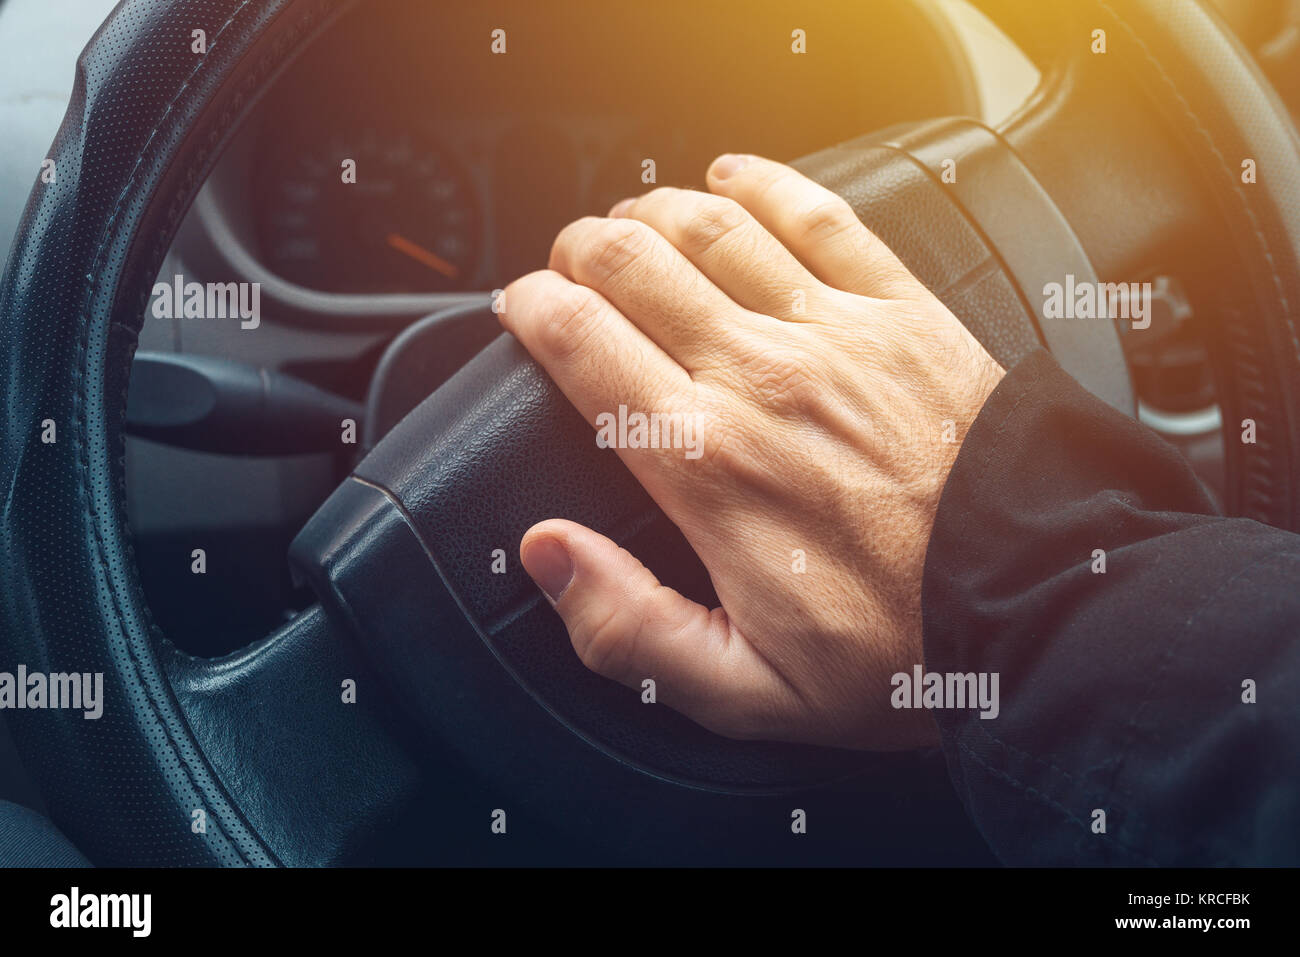 Männliche hand Auto hupen Hupe, Mann, der Fahrzeug- und Piepen  Stockfotografie - Alamy